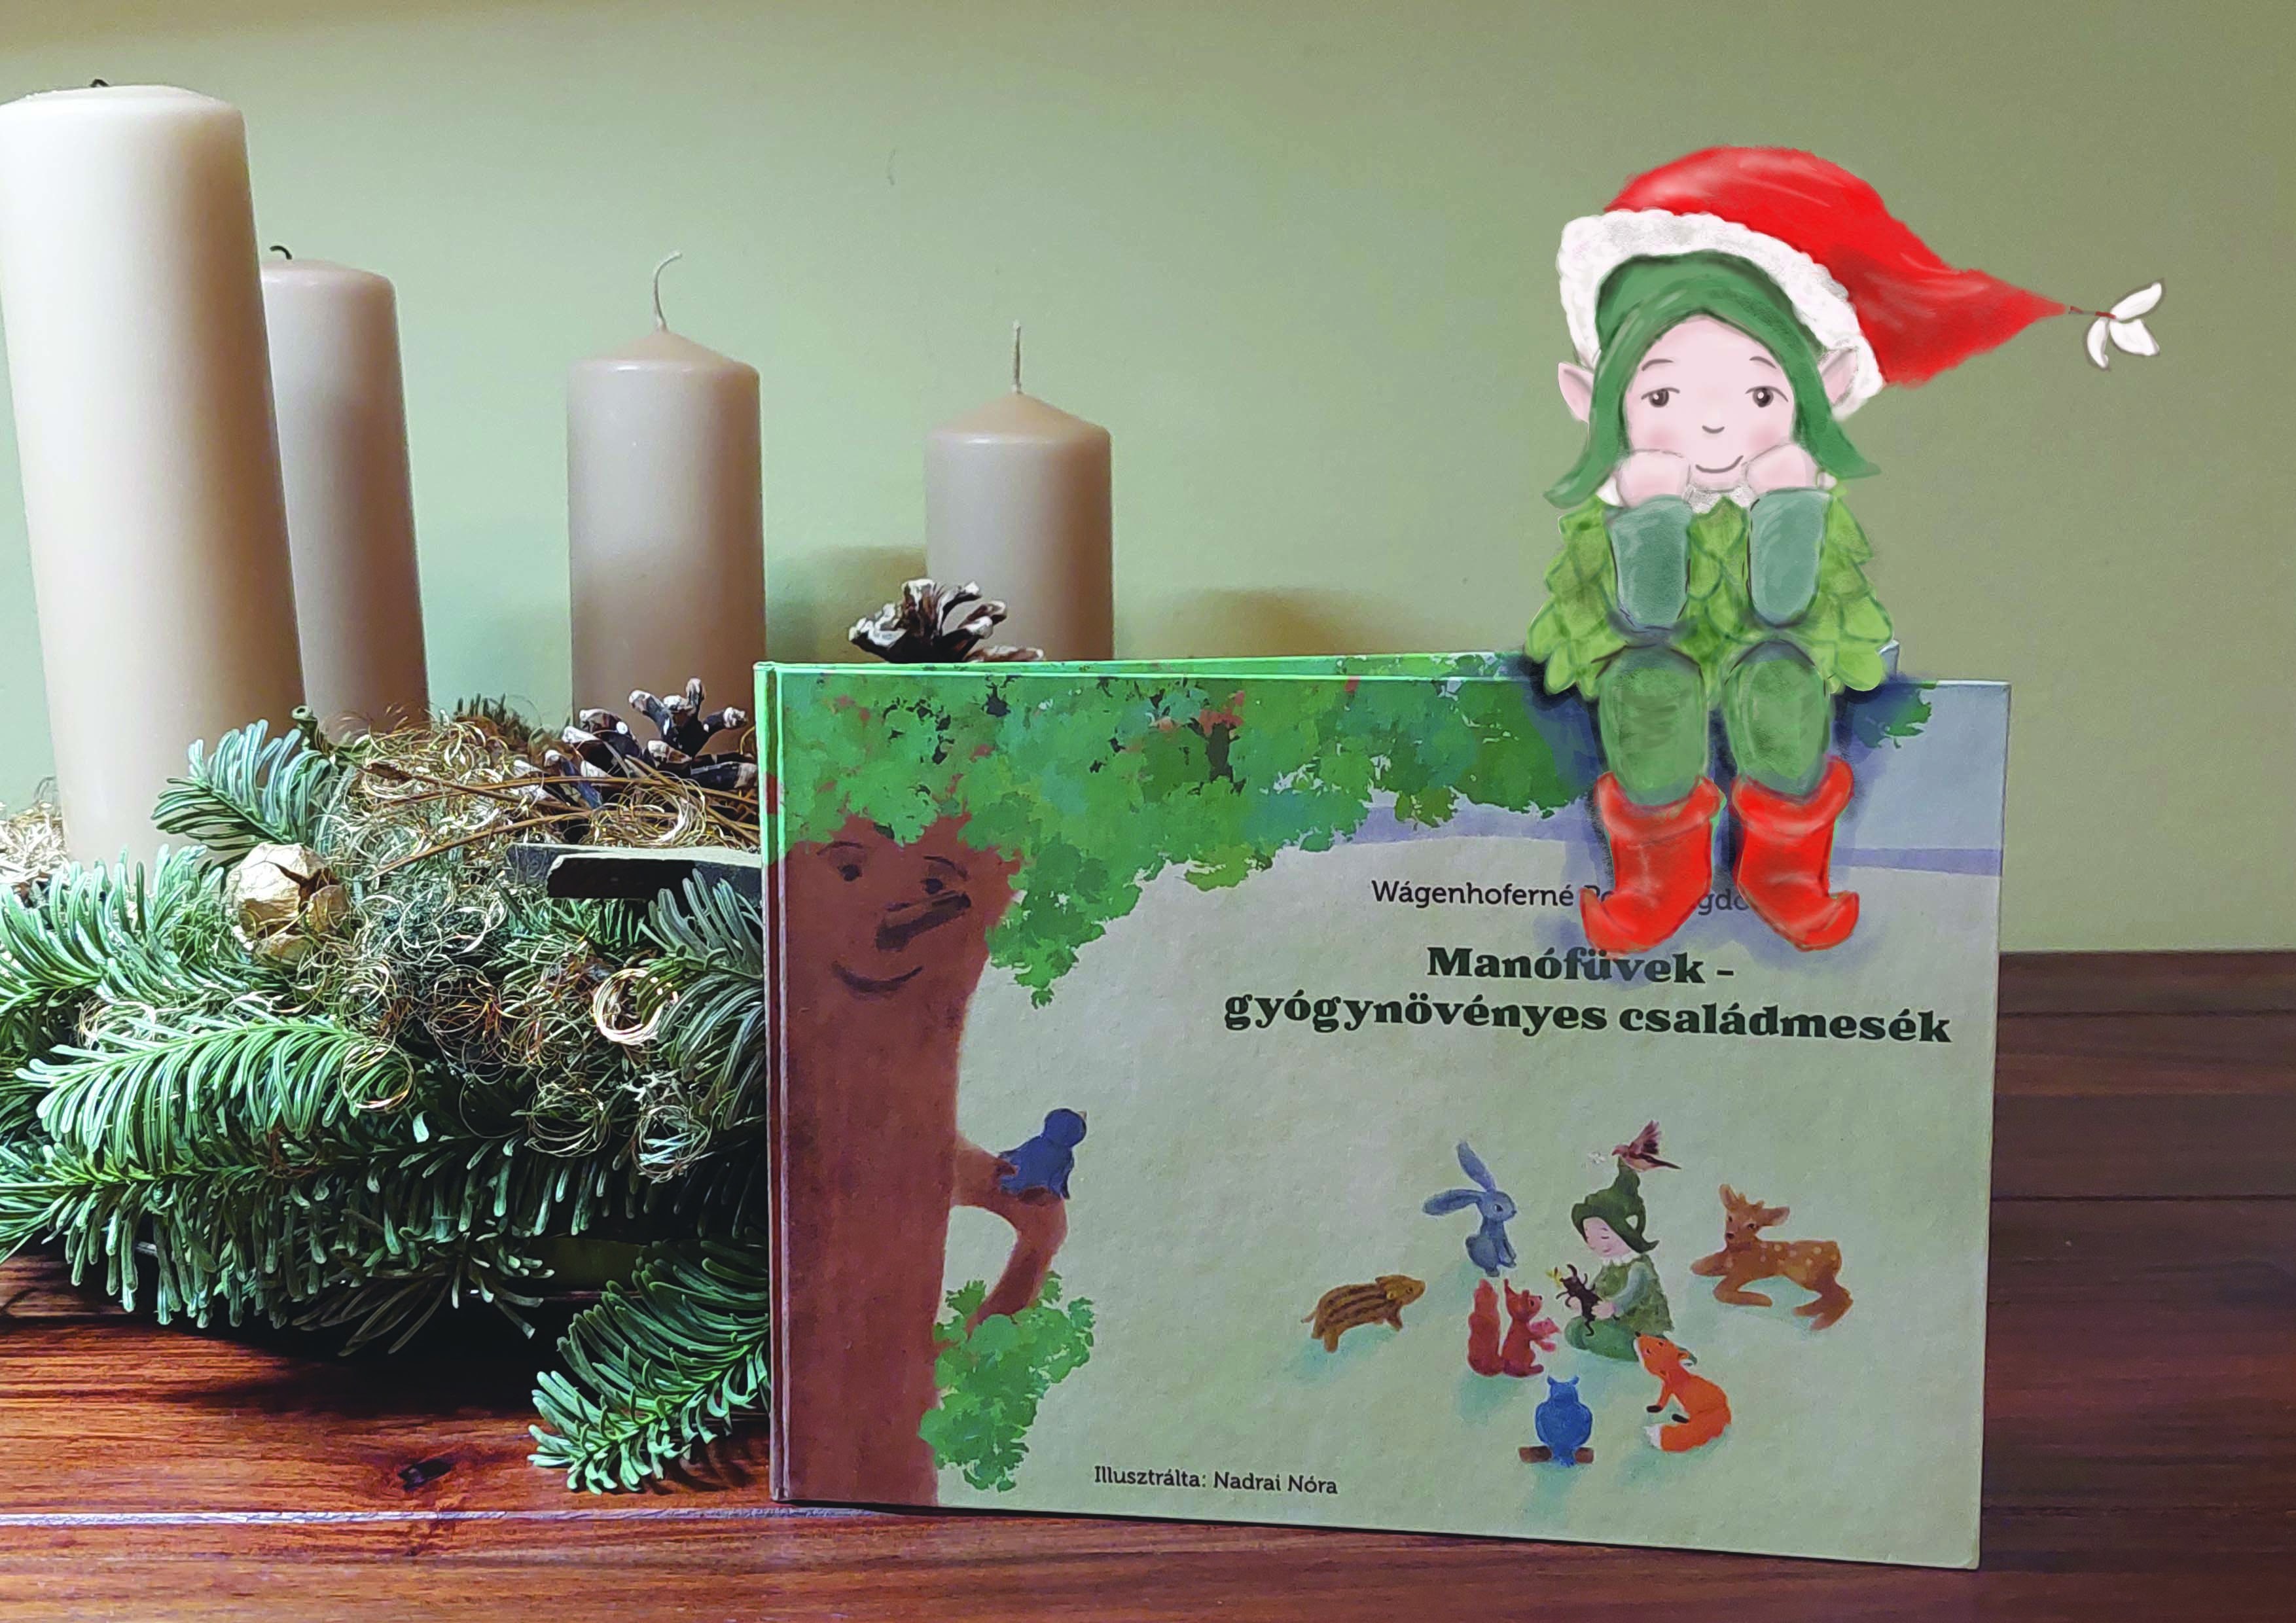 Zöldmanó karácsonya - Manófüvek - Gyógynövényes családmesék 3. kötete